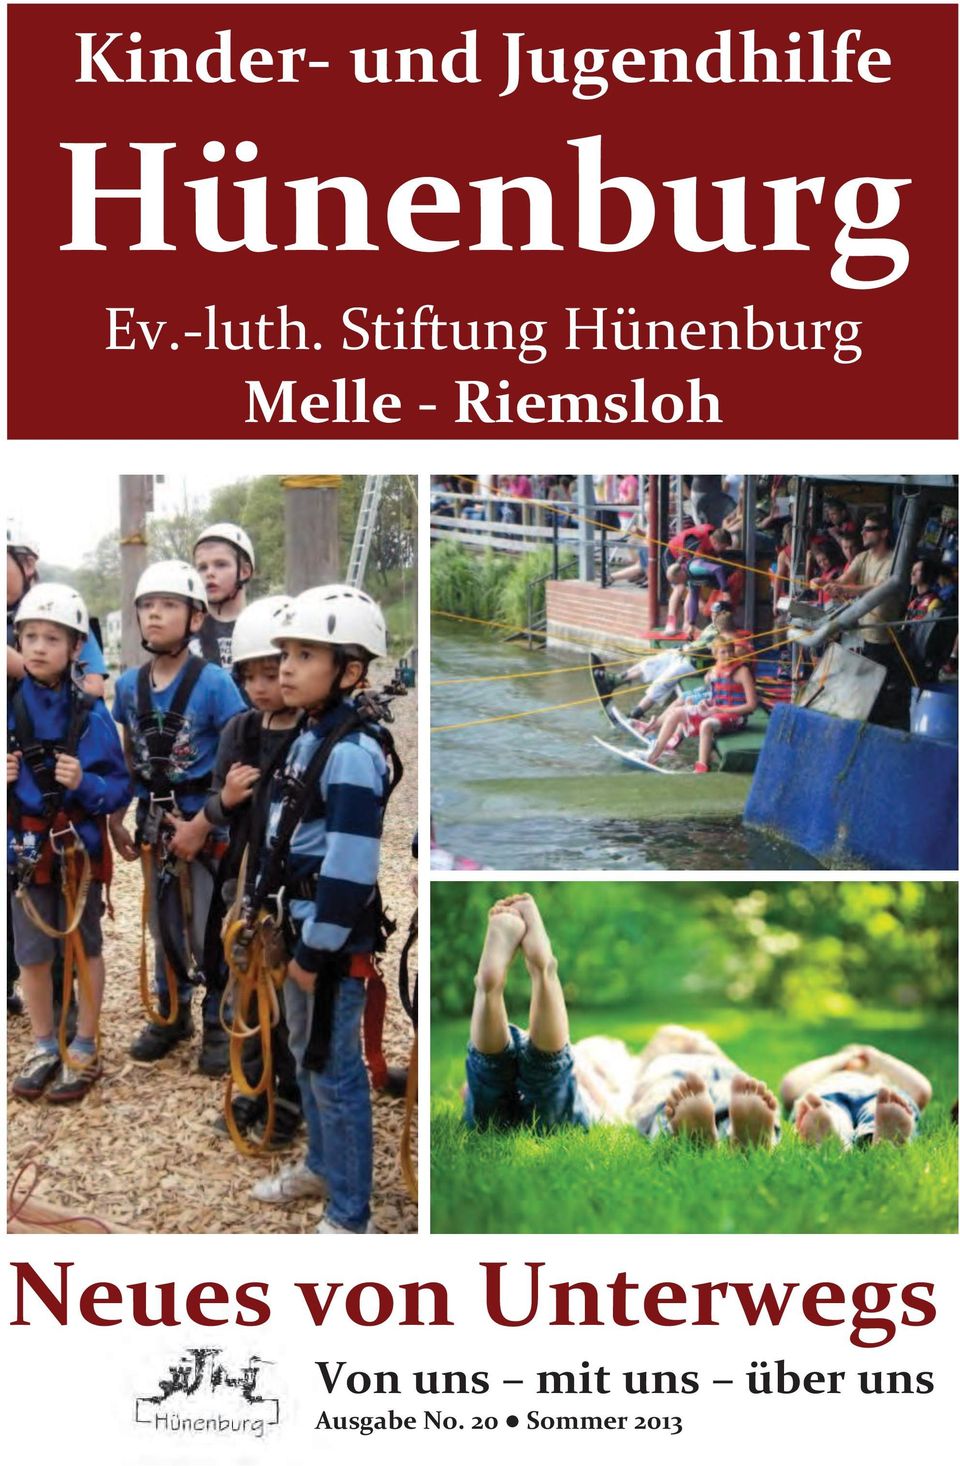 Stiftung Hünenburg Melle - Riemsloh